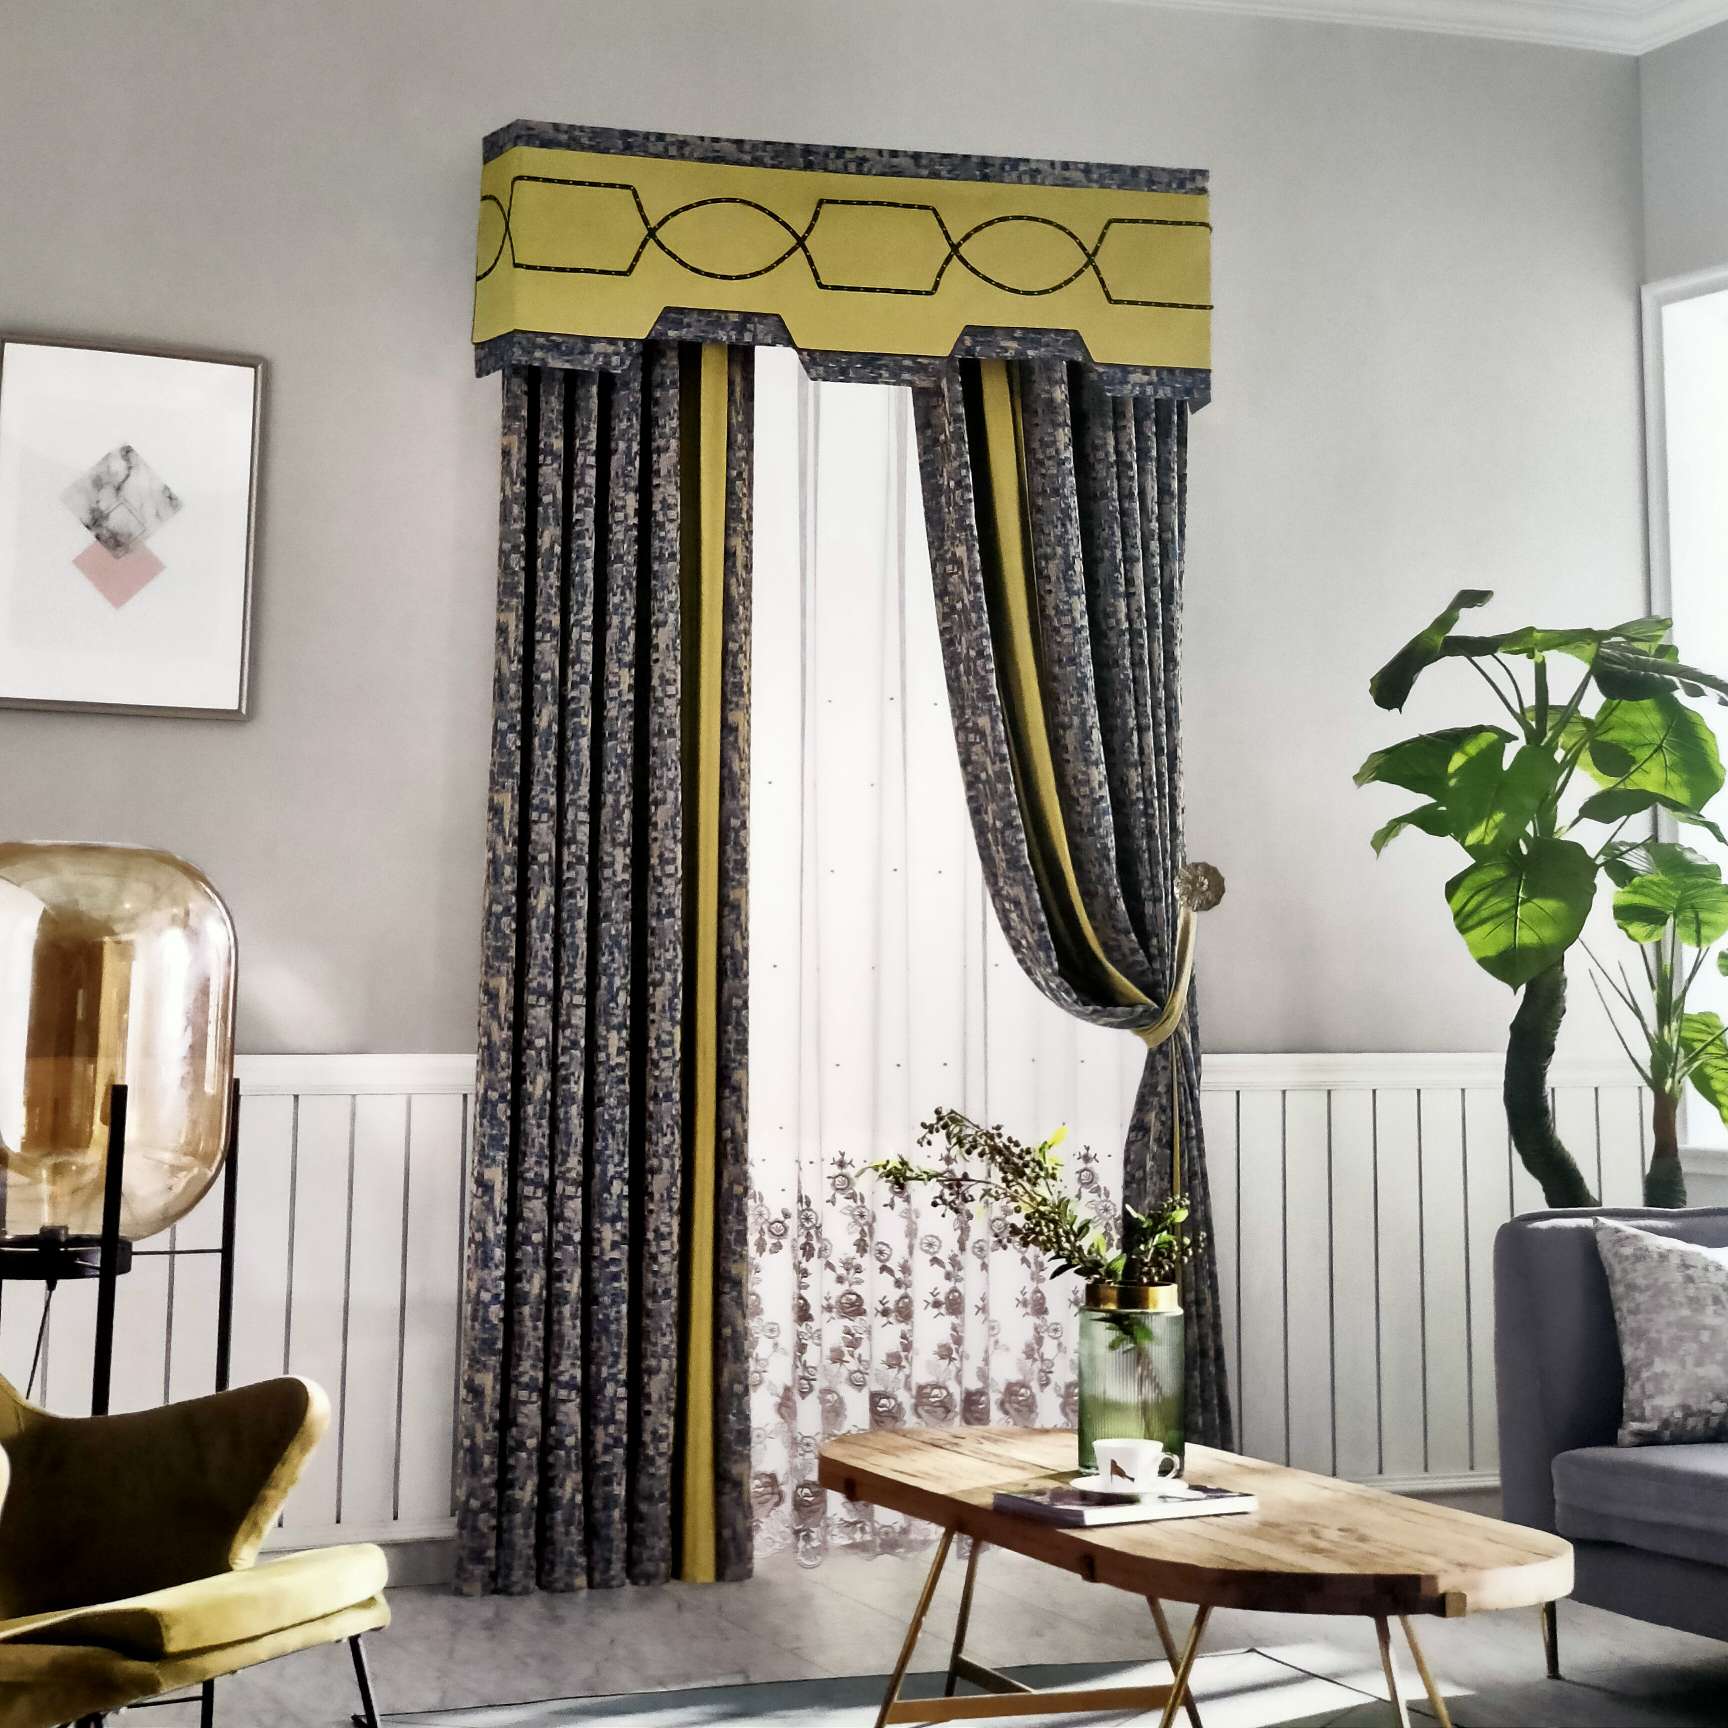 法式轻奢系列窗帘高端高精密提花深蓝色&黄奶油色带幔窗帘4m内产品图